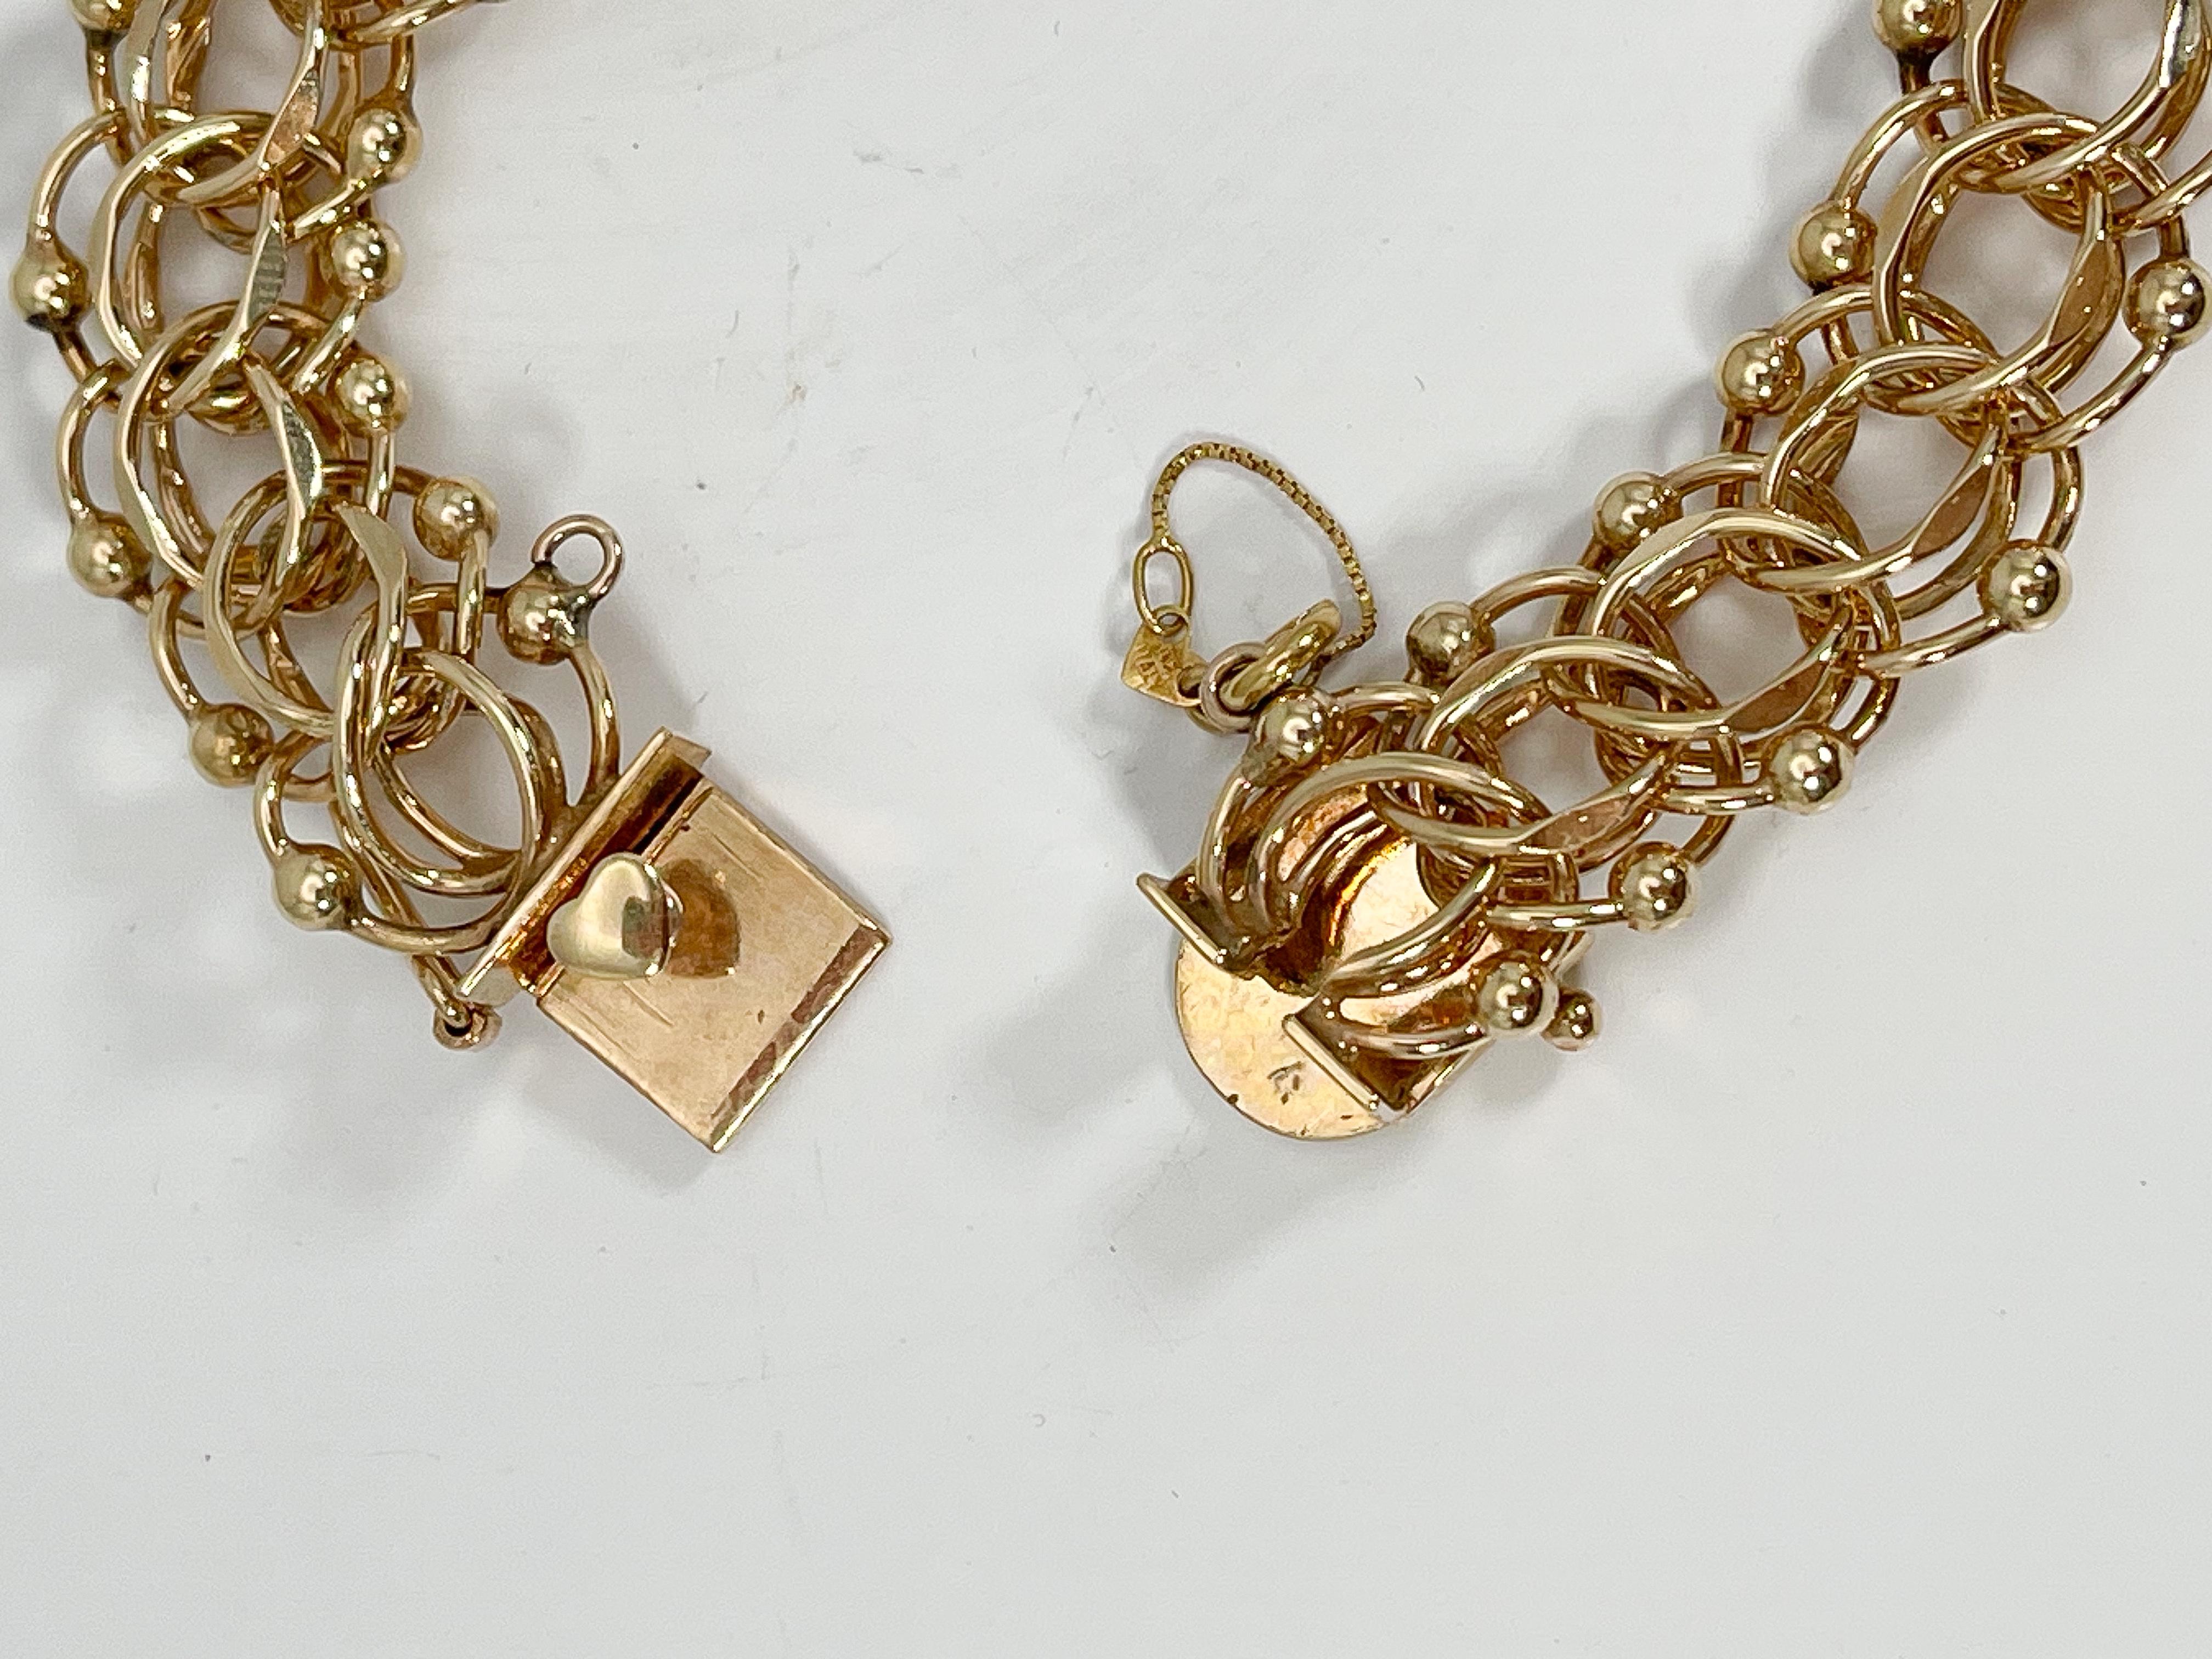 14k gold vintage charm bracelet